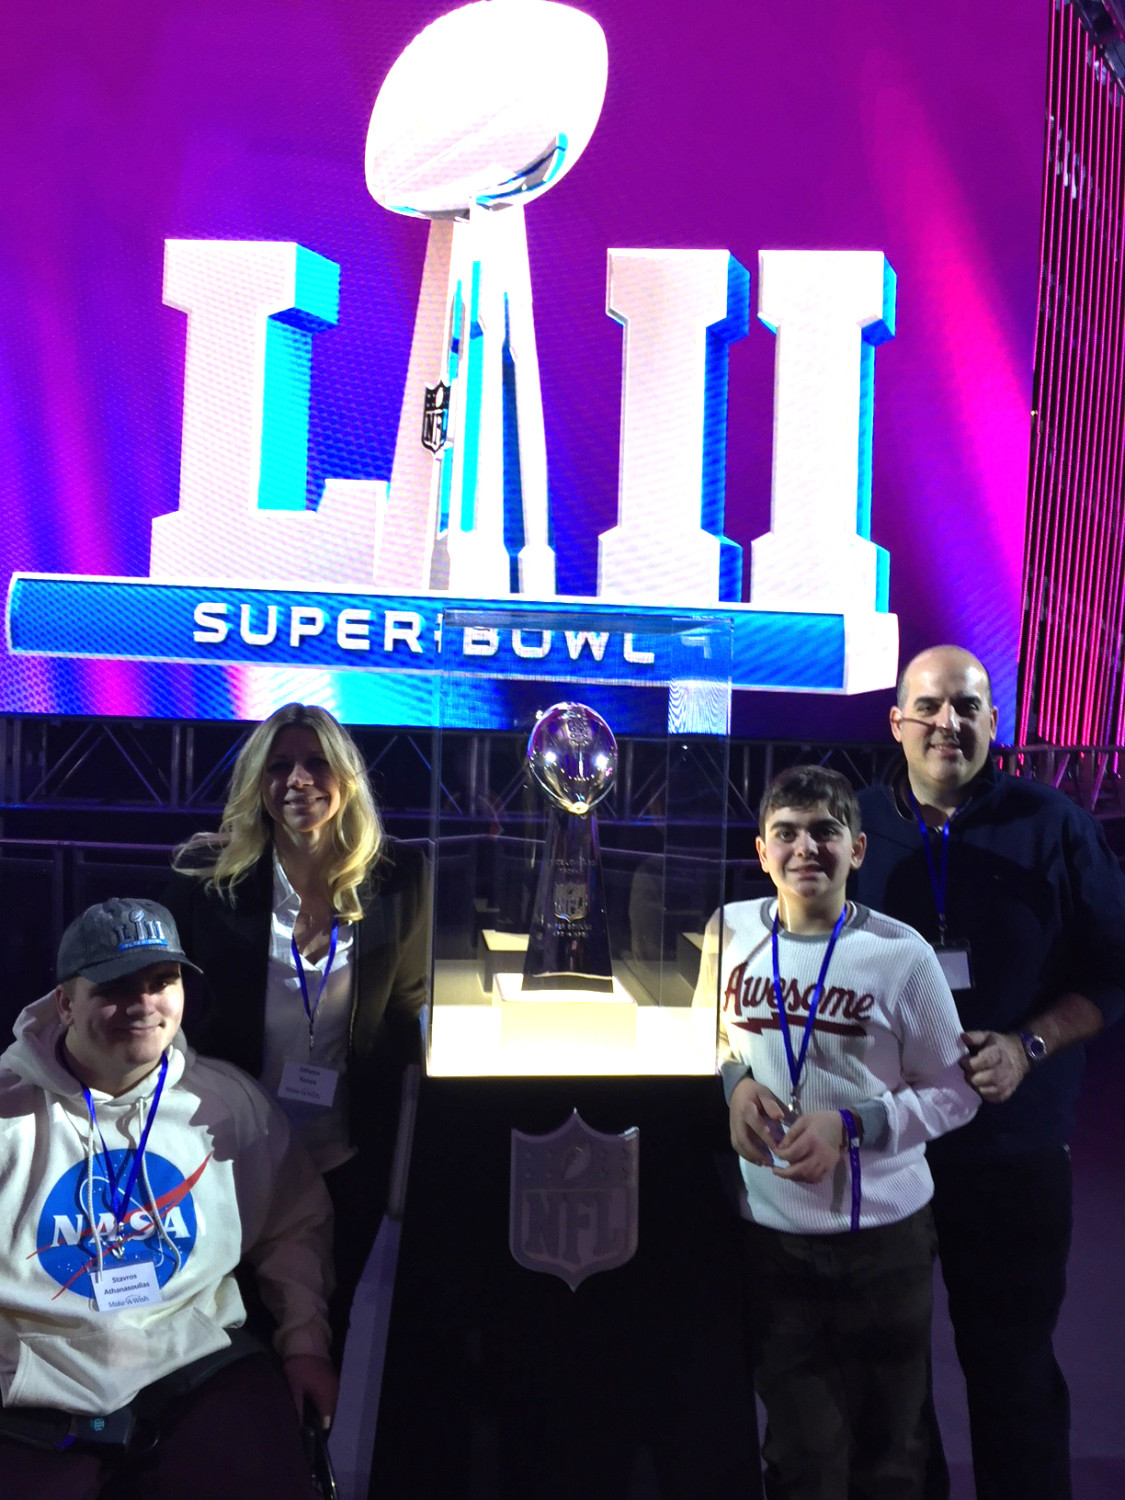 La famille Athanasoulias a vécu des émotions fortes en participant aux activités du Super Bowl.